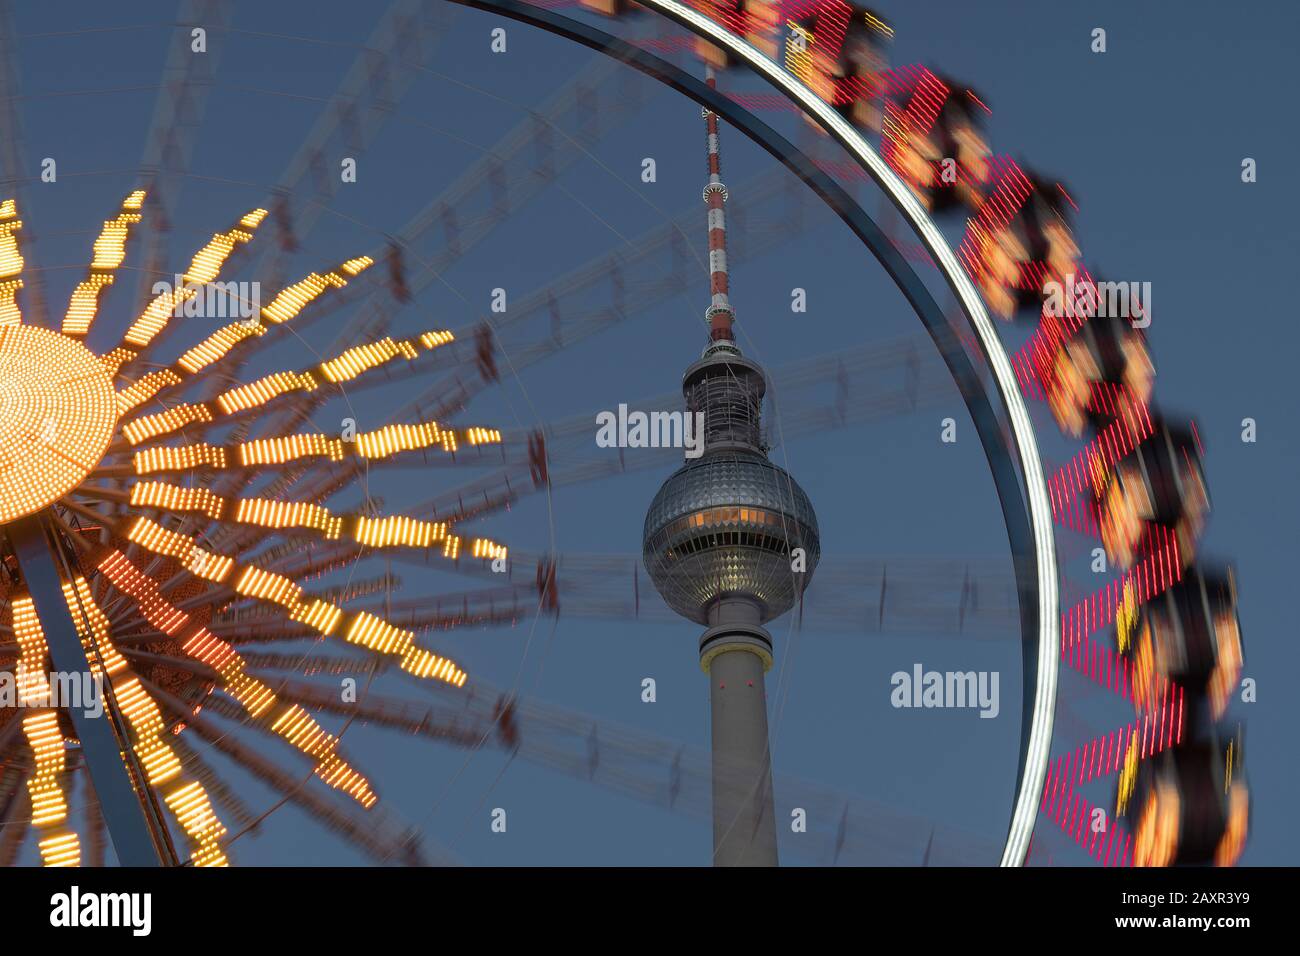 Berlin, place Alexander, Berlin, place Alexander (place), tour de télévision, roue Ferris, détail, flou de mouvement, dynamique Banque D'Images